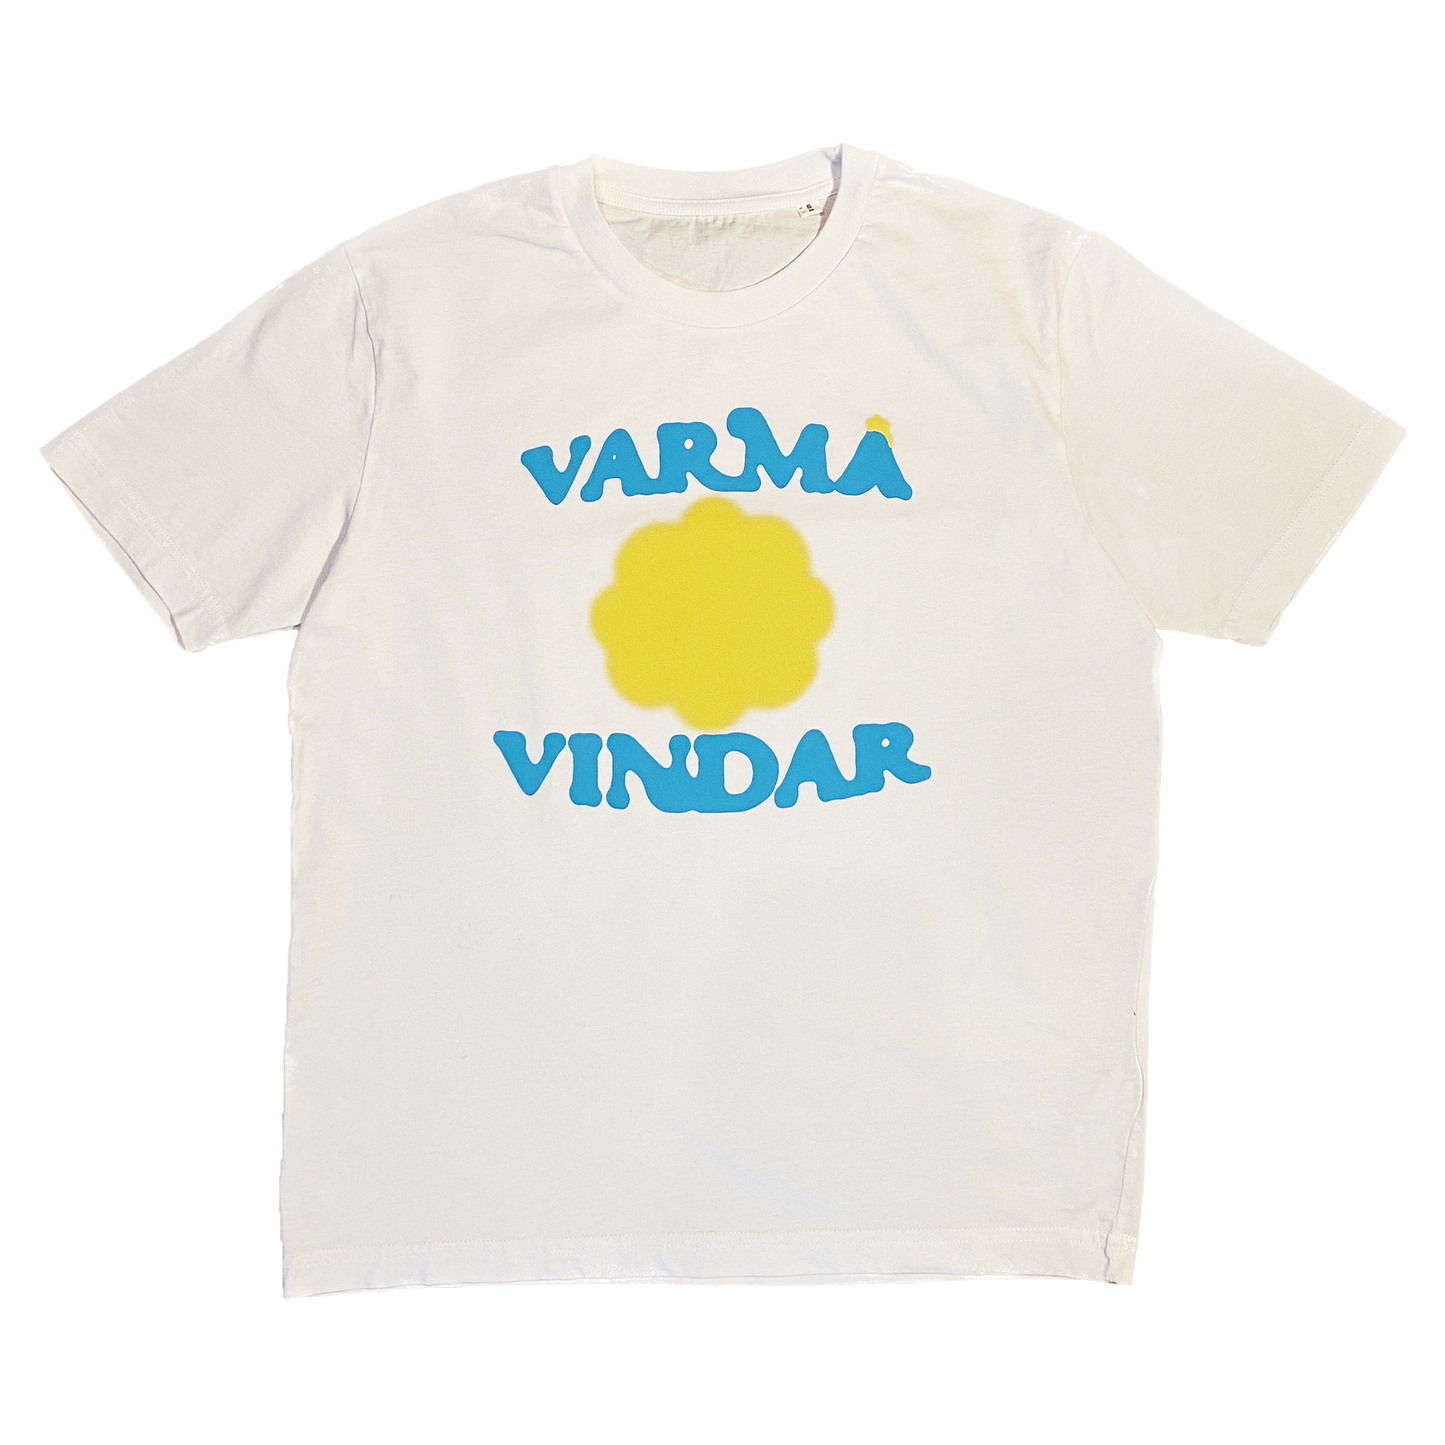 VARMA VINDAR T-SHIRT